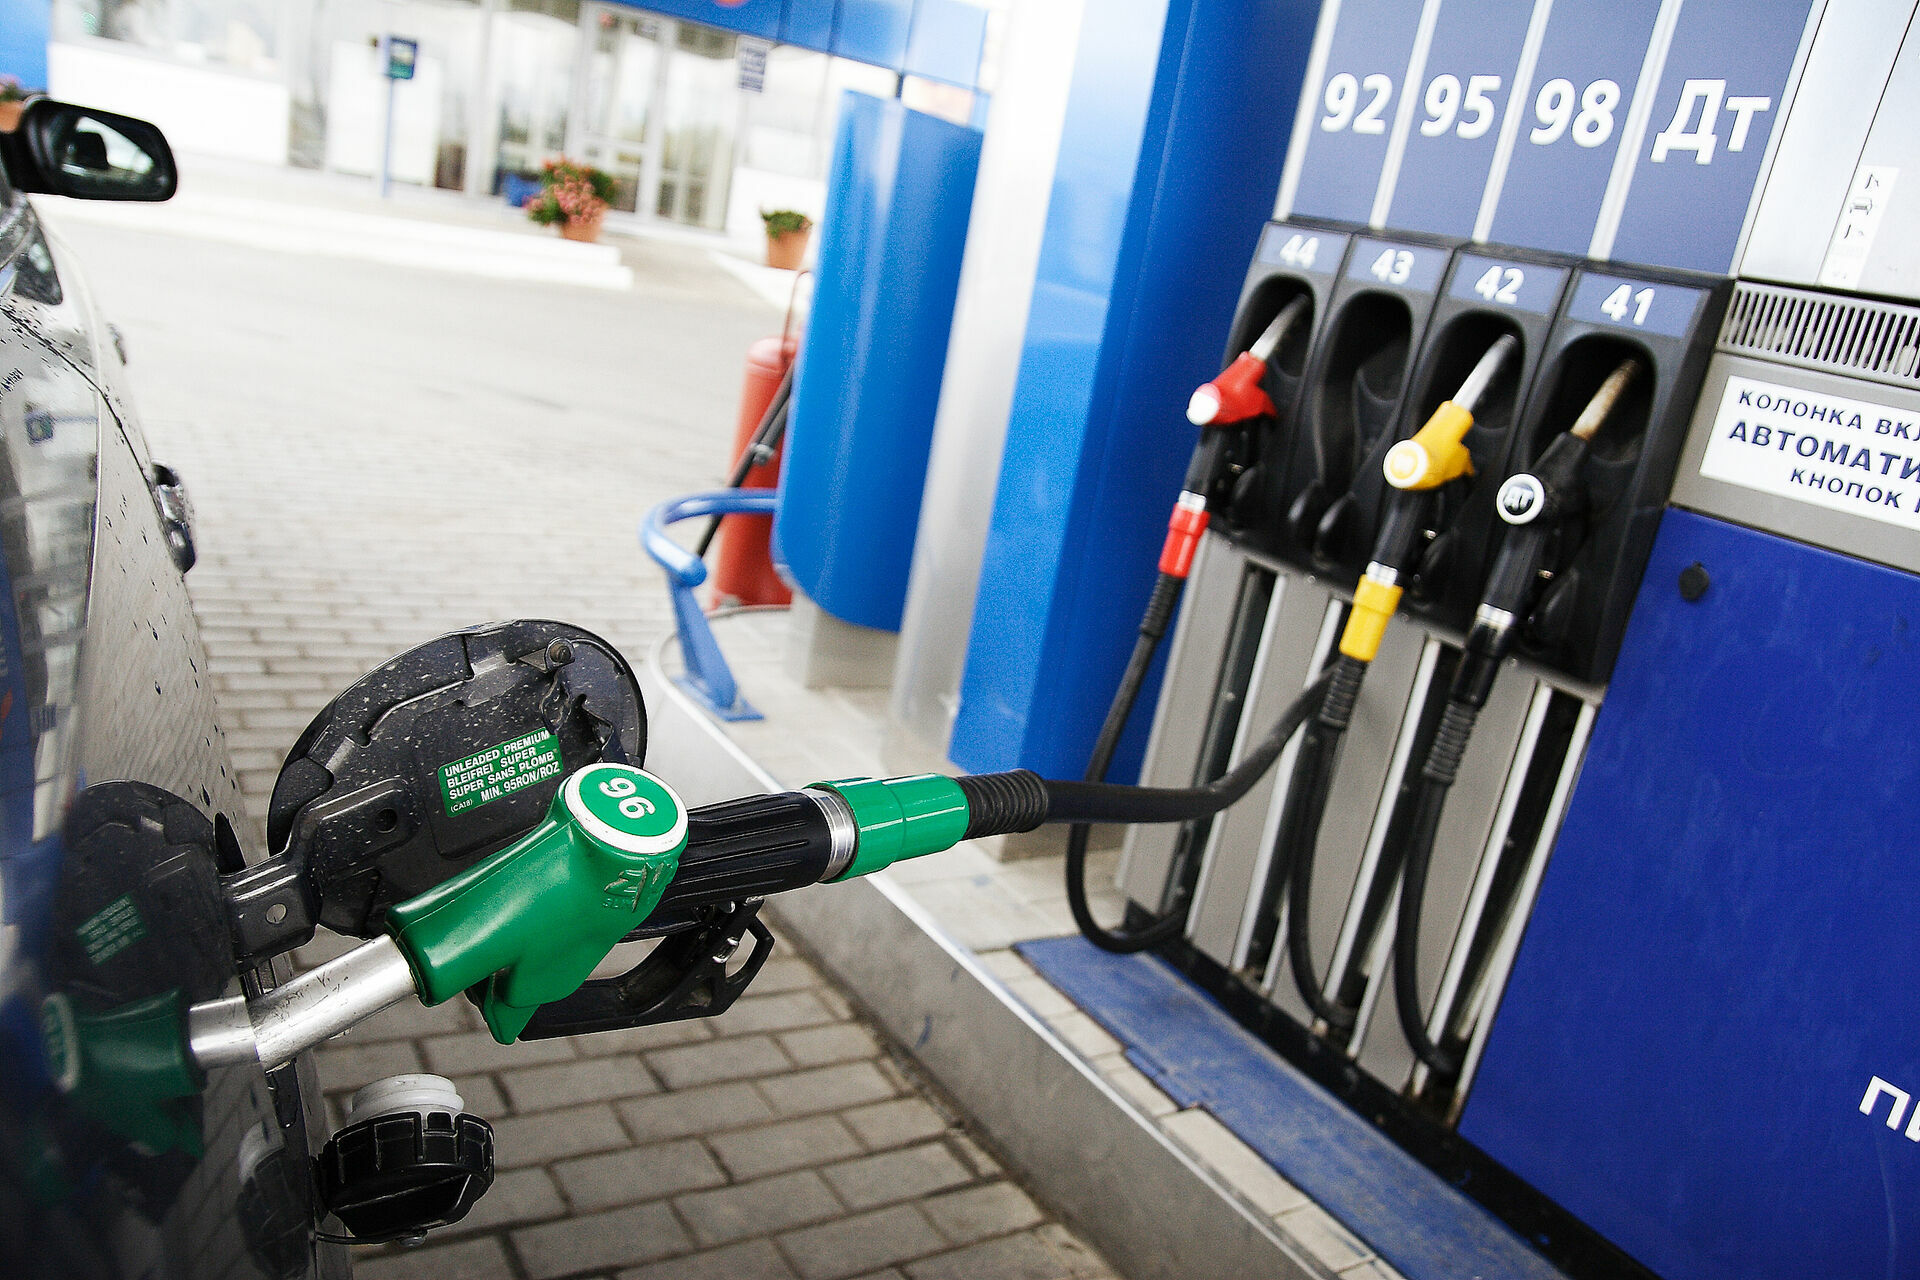 Алекперов заявил, что цены на бензин в России не снизятся